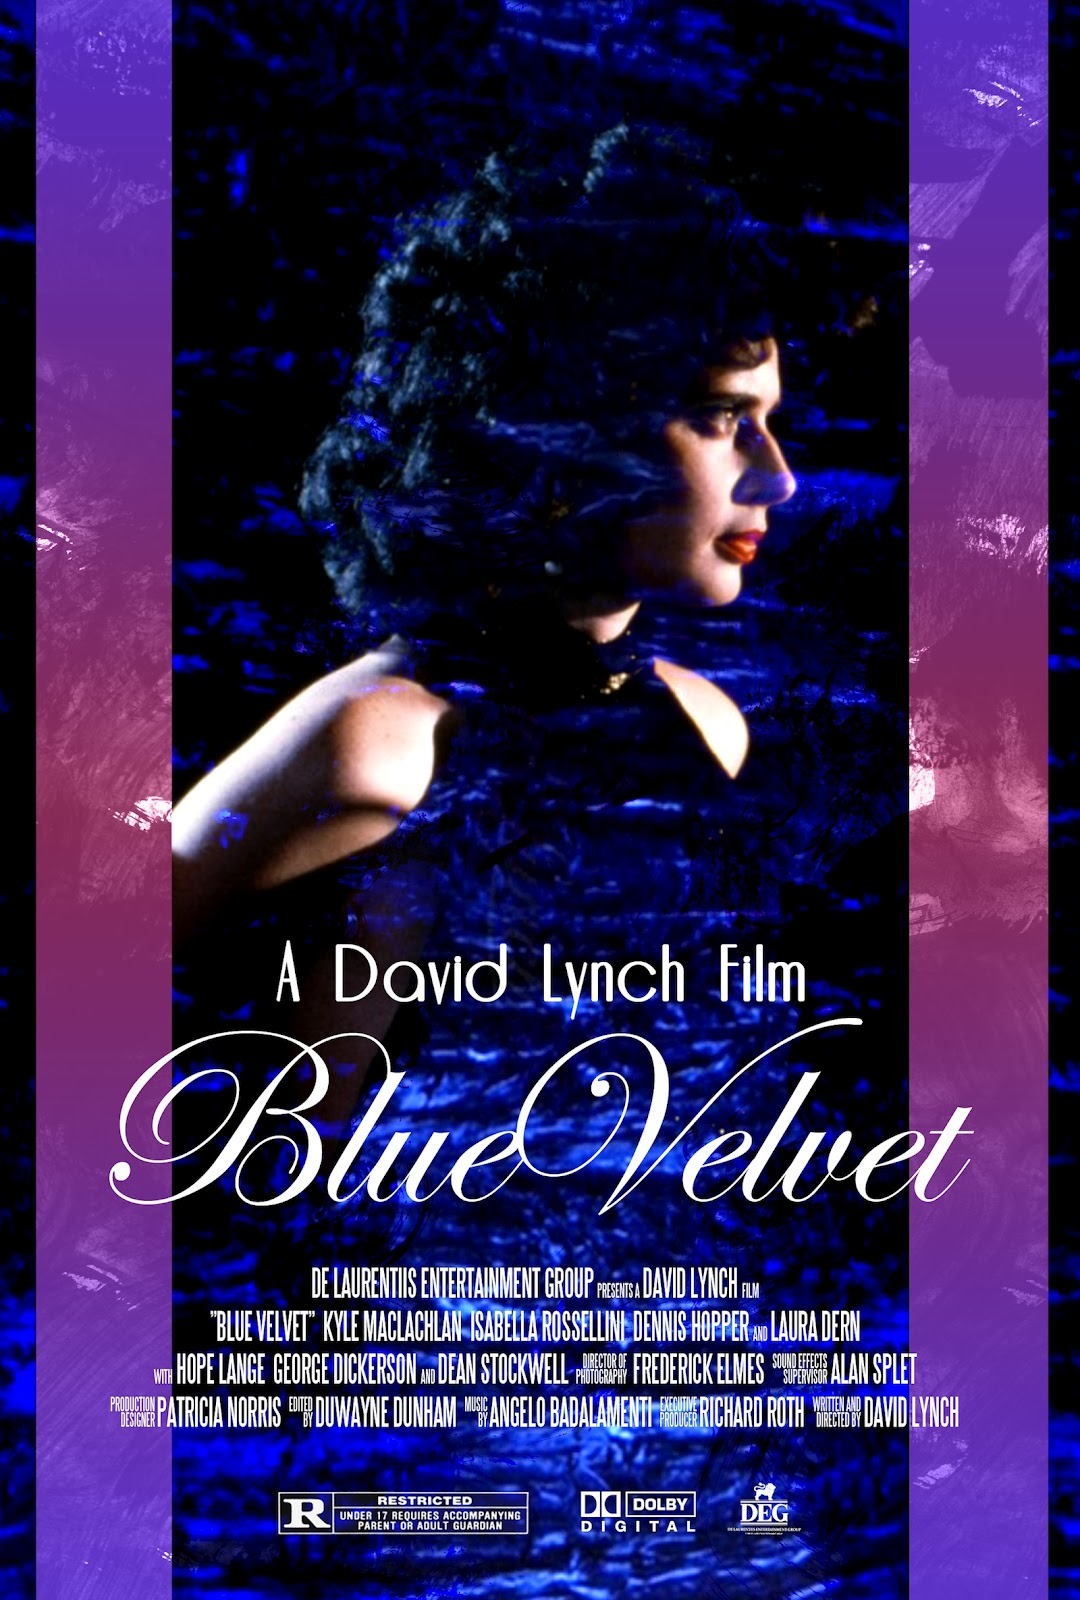 David Lynch Film Retrospective Blue Velvet New Orleans Museum Of Art